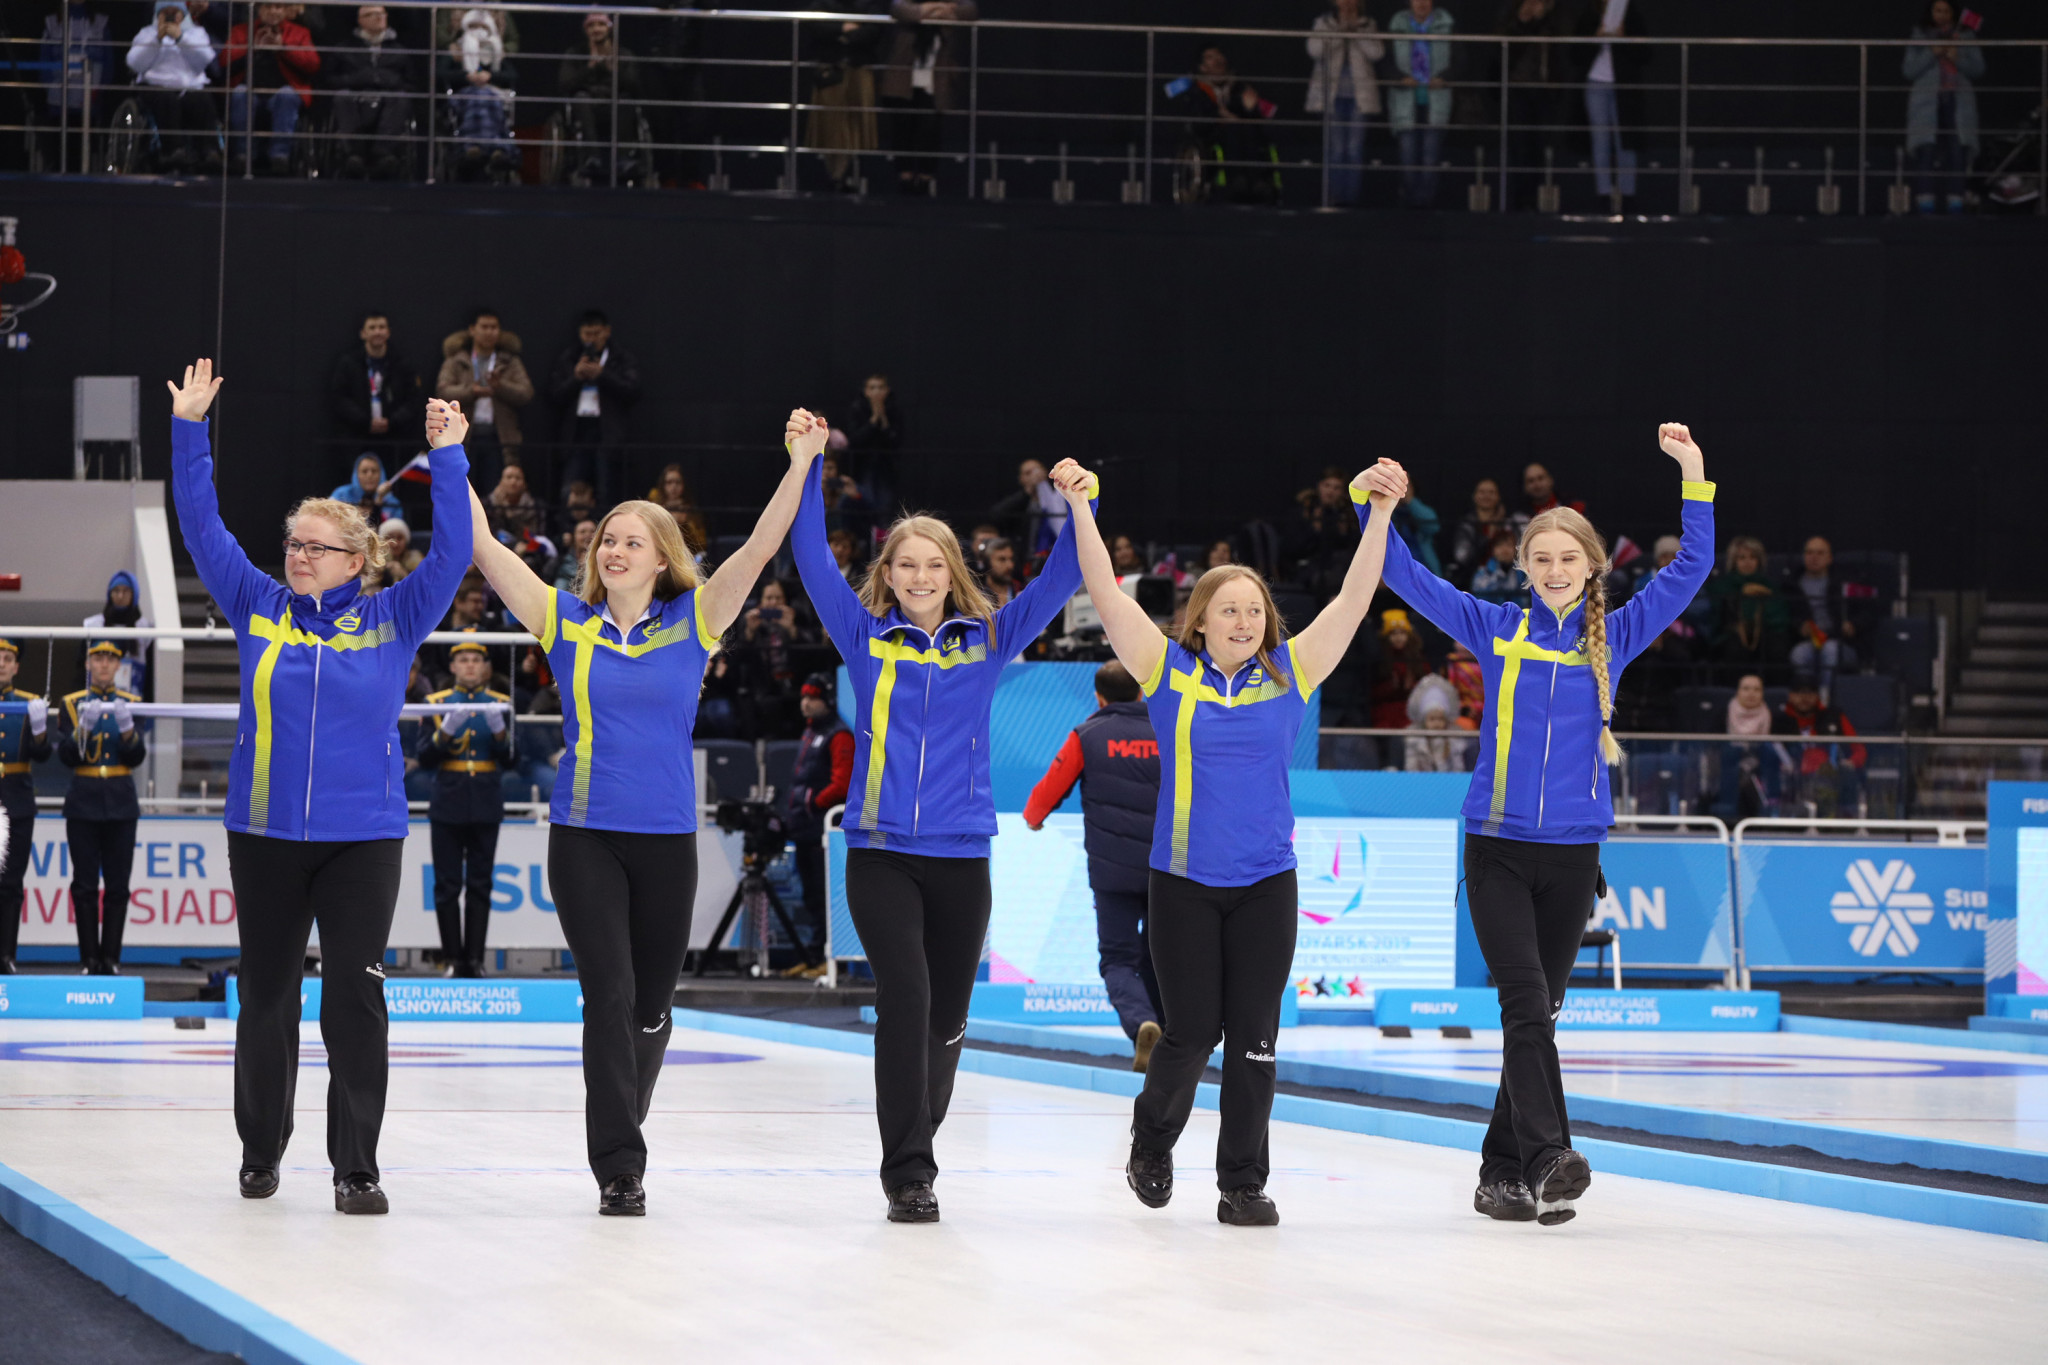 Sweden beat South Korea in the women's curling final to take gold ©Krasnoyarsk 2019